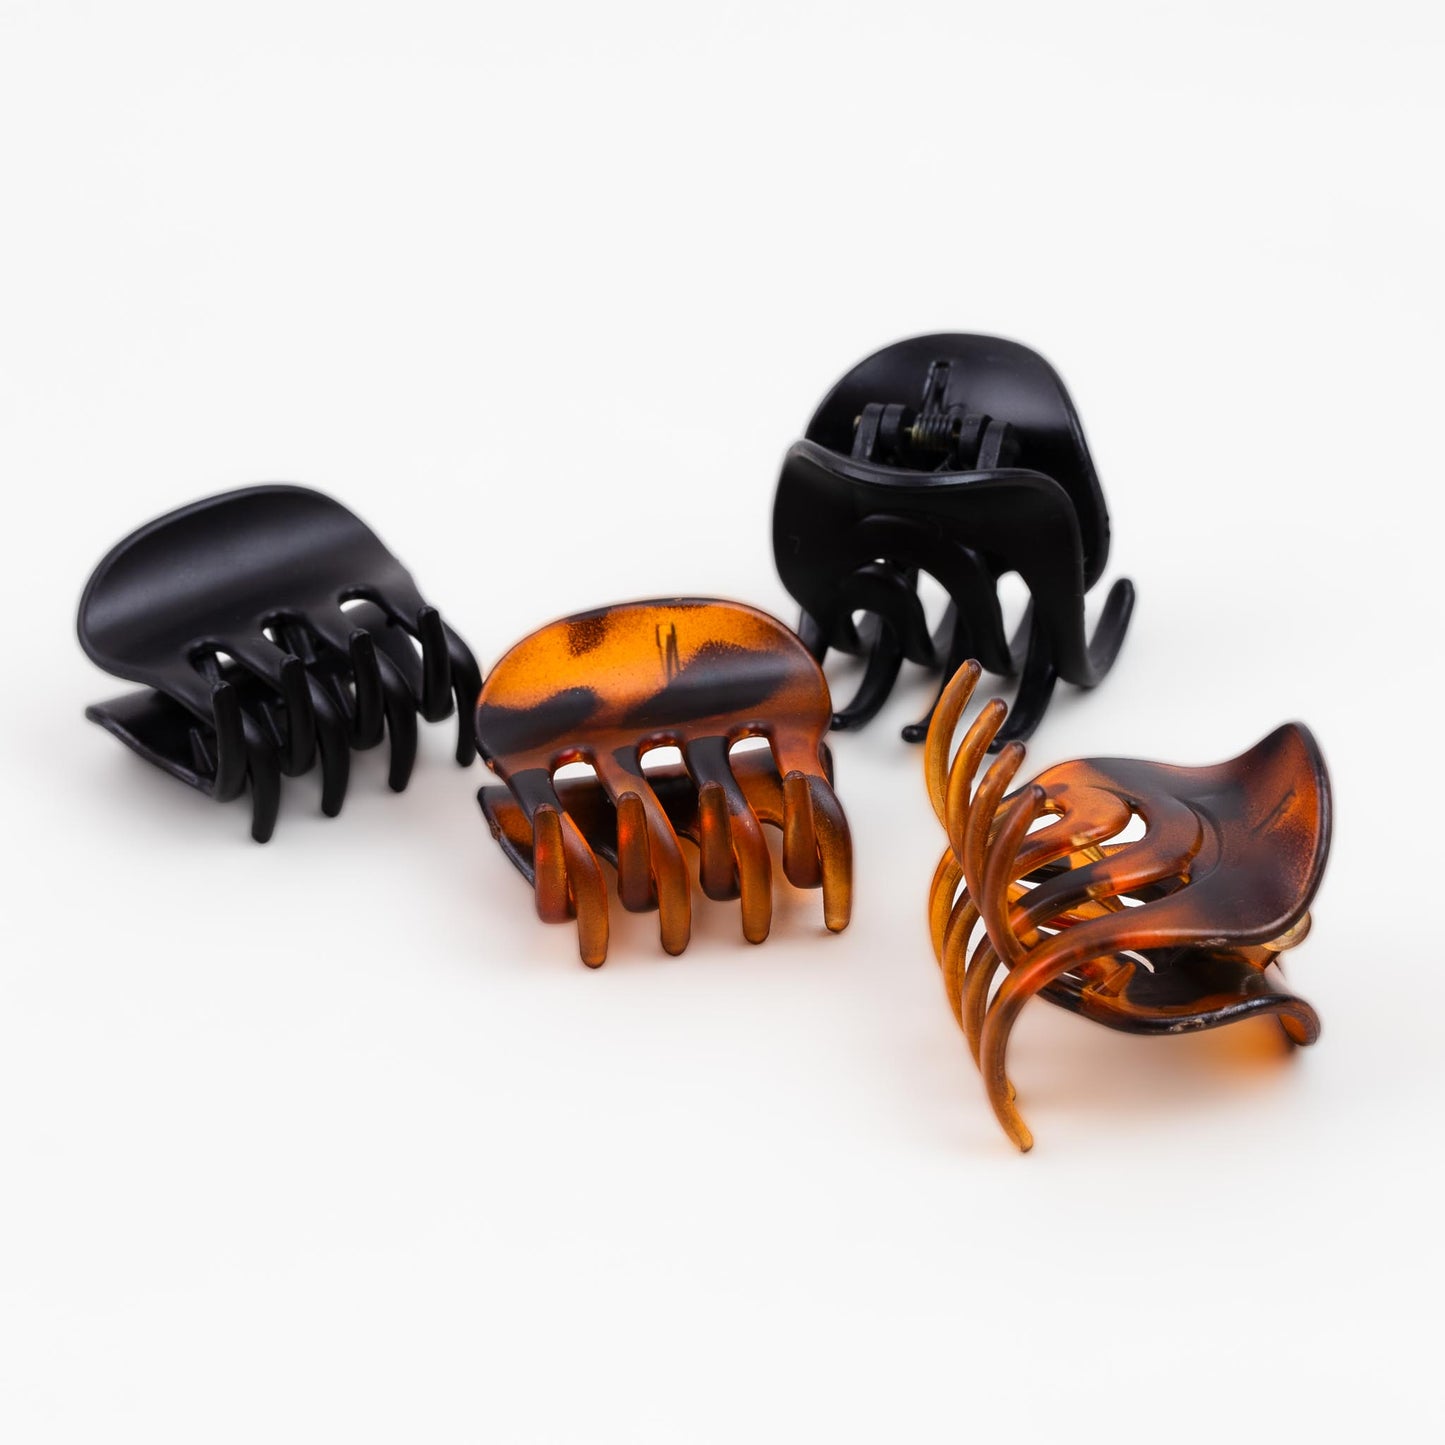 Clame de păr mici cu ondulații și animal print, set 4 buc - Maro, Negru